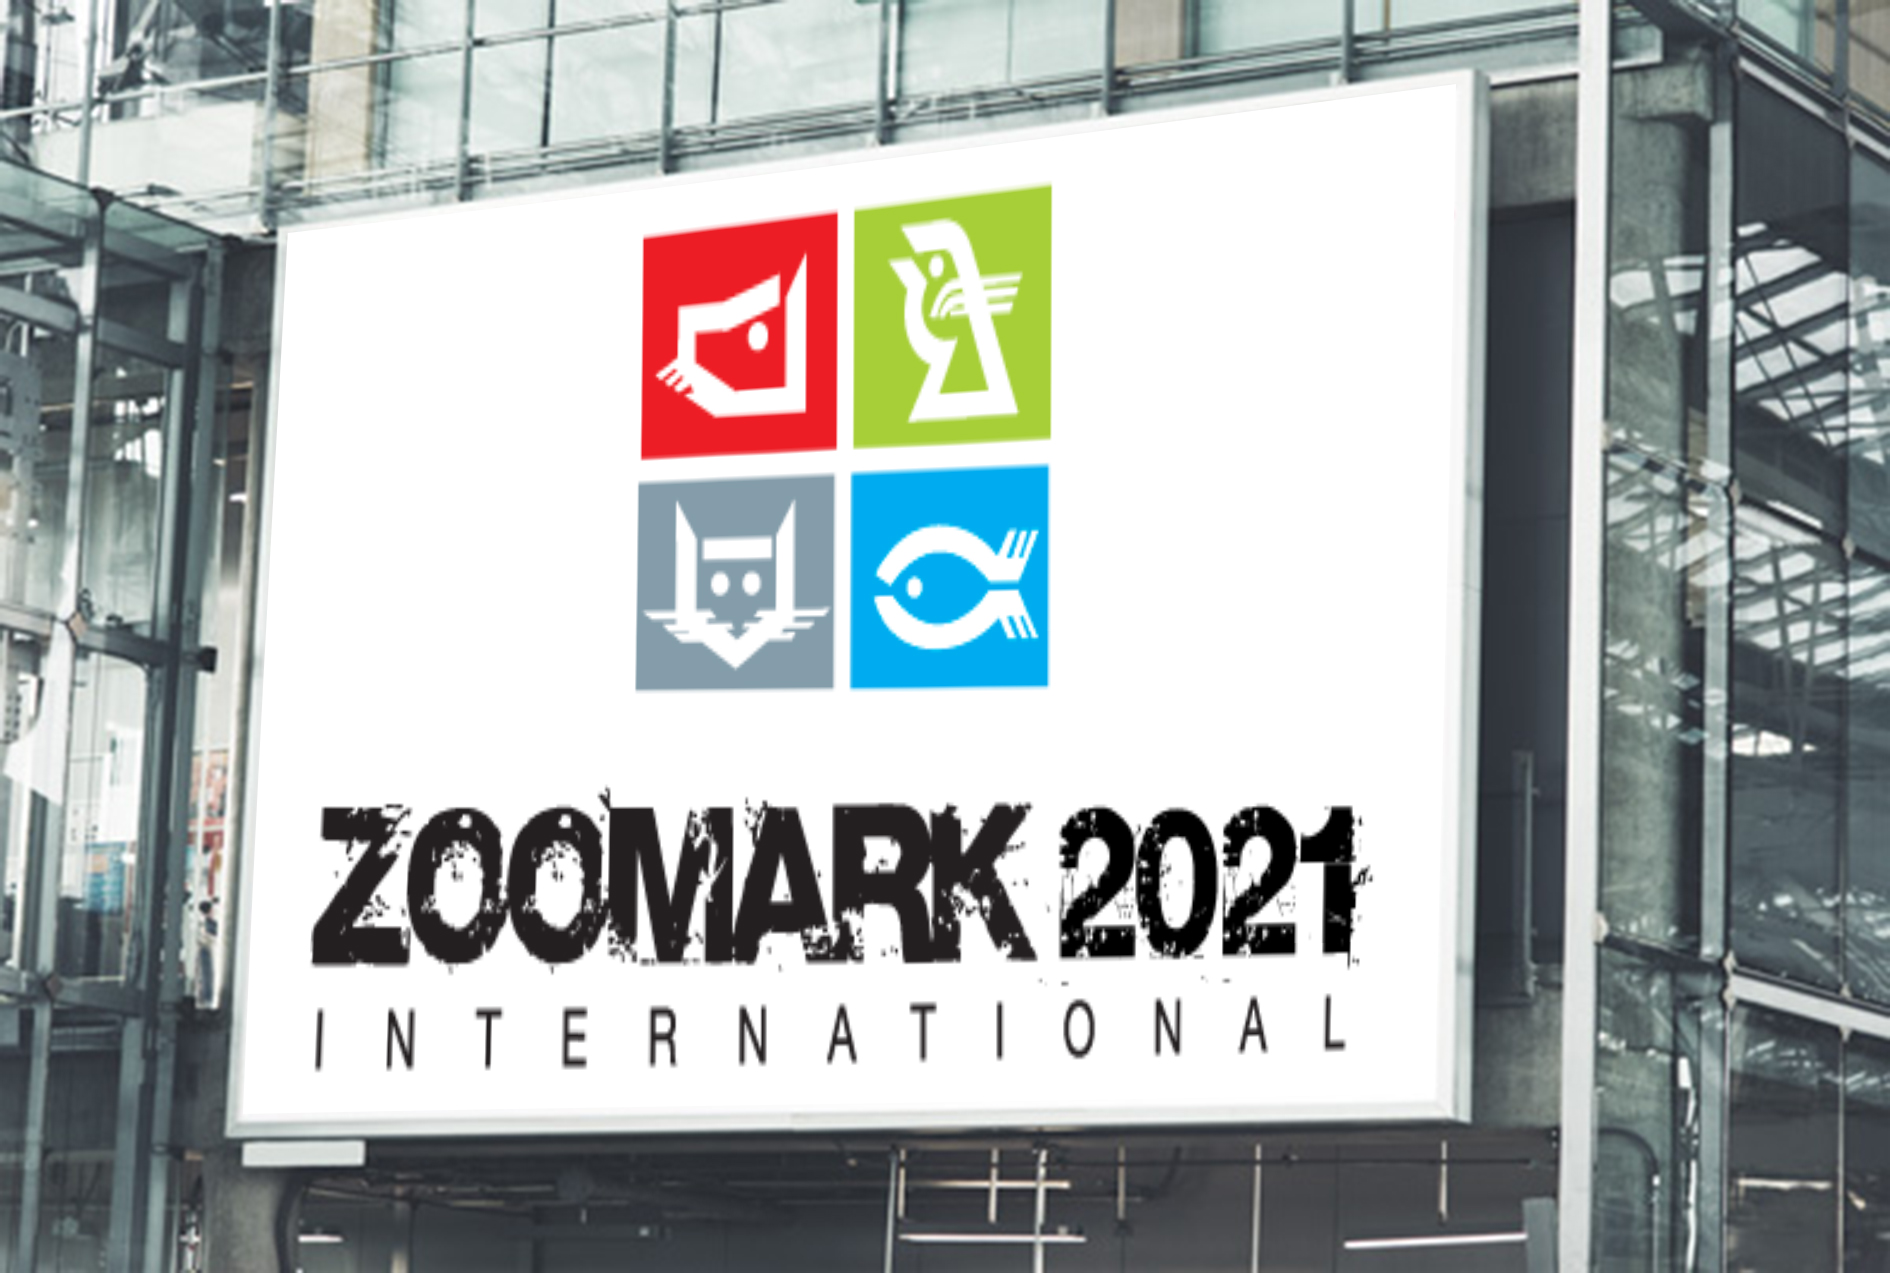 Zoomark 2021’e katıldık Netaş Madencilik